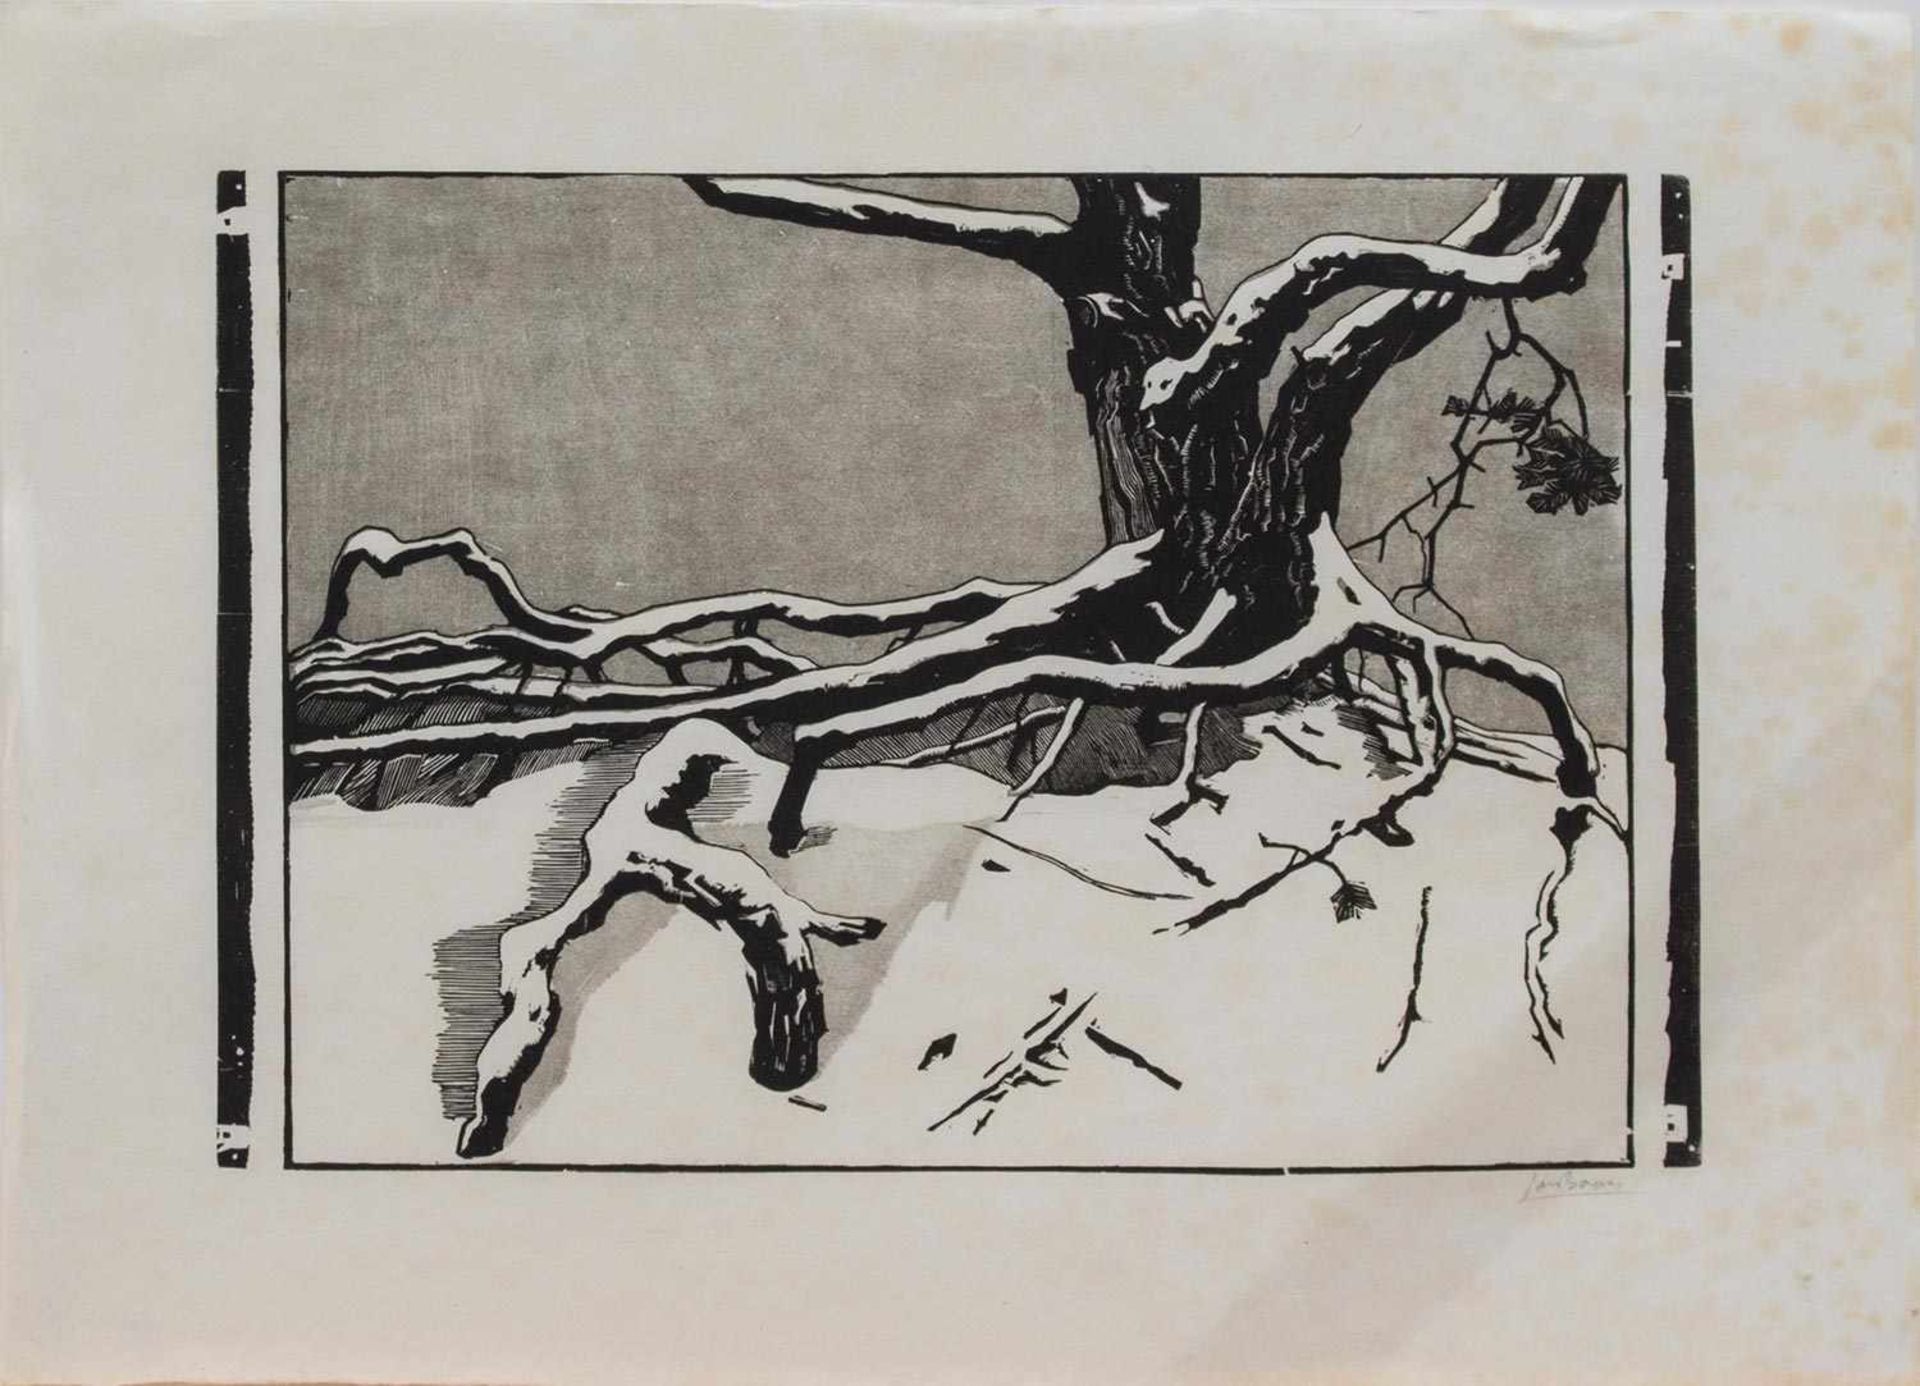 Jan Boon (Nieuwer Amstel 1882 - 1975 Gravenhage, niederl. Maler, Zeichner u. Grafiker, Std. a.d.